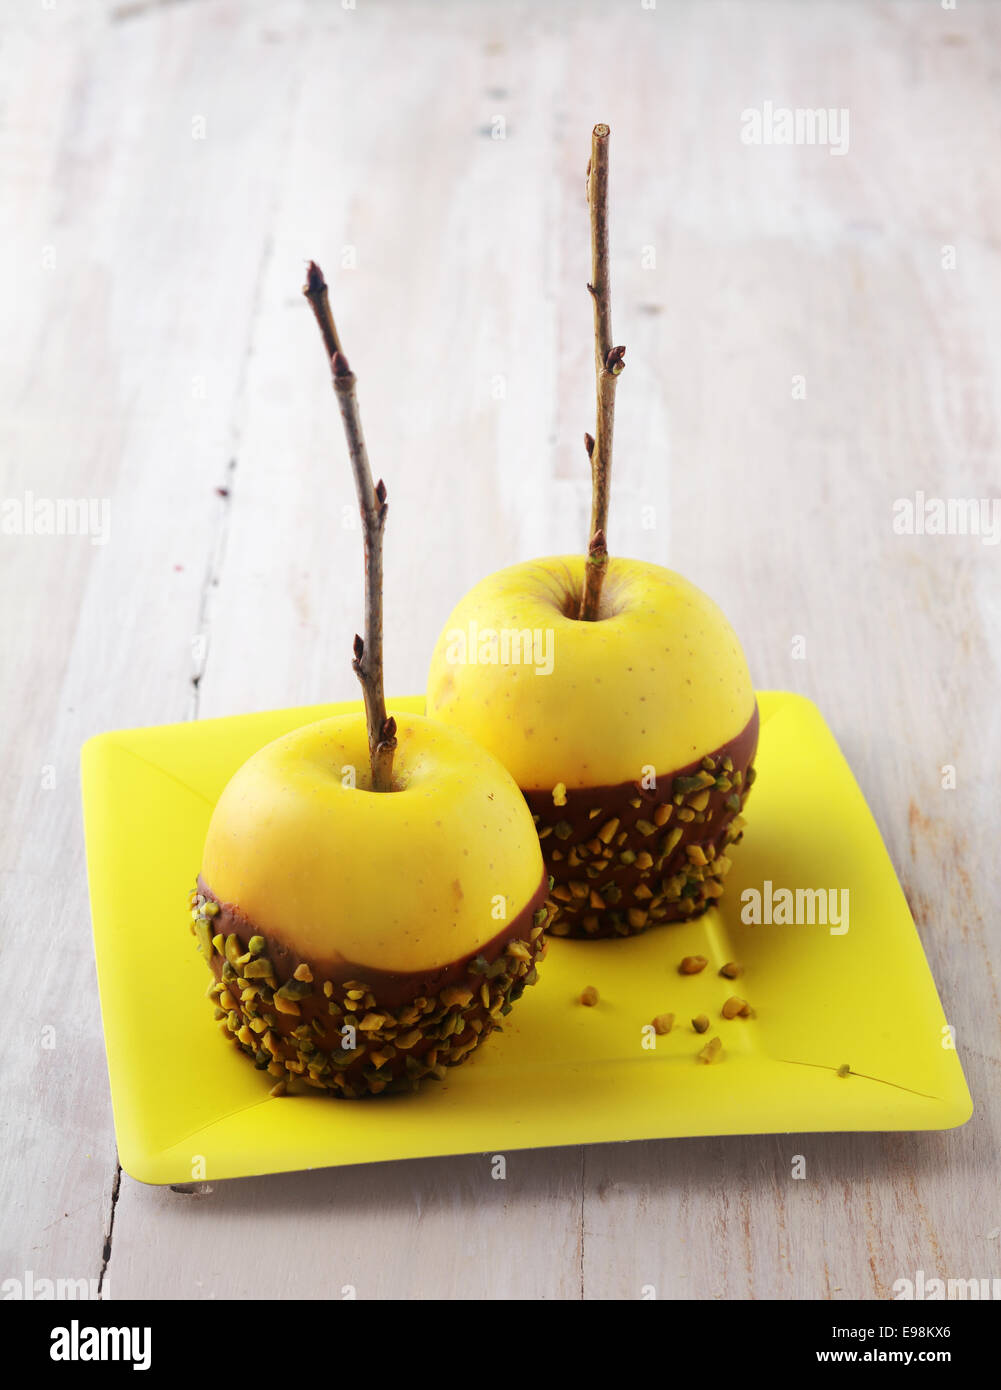 Gesunde frische Bio goldenen gelbe Äpfeln dekoriert mit Schokolade und gehackten Nüssen serviert auf eine quadratische gelbe Platte für ein Halloween-Dessert, rustikale Tafel Hintergrund mit Exemplar Stockfoto